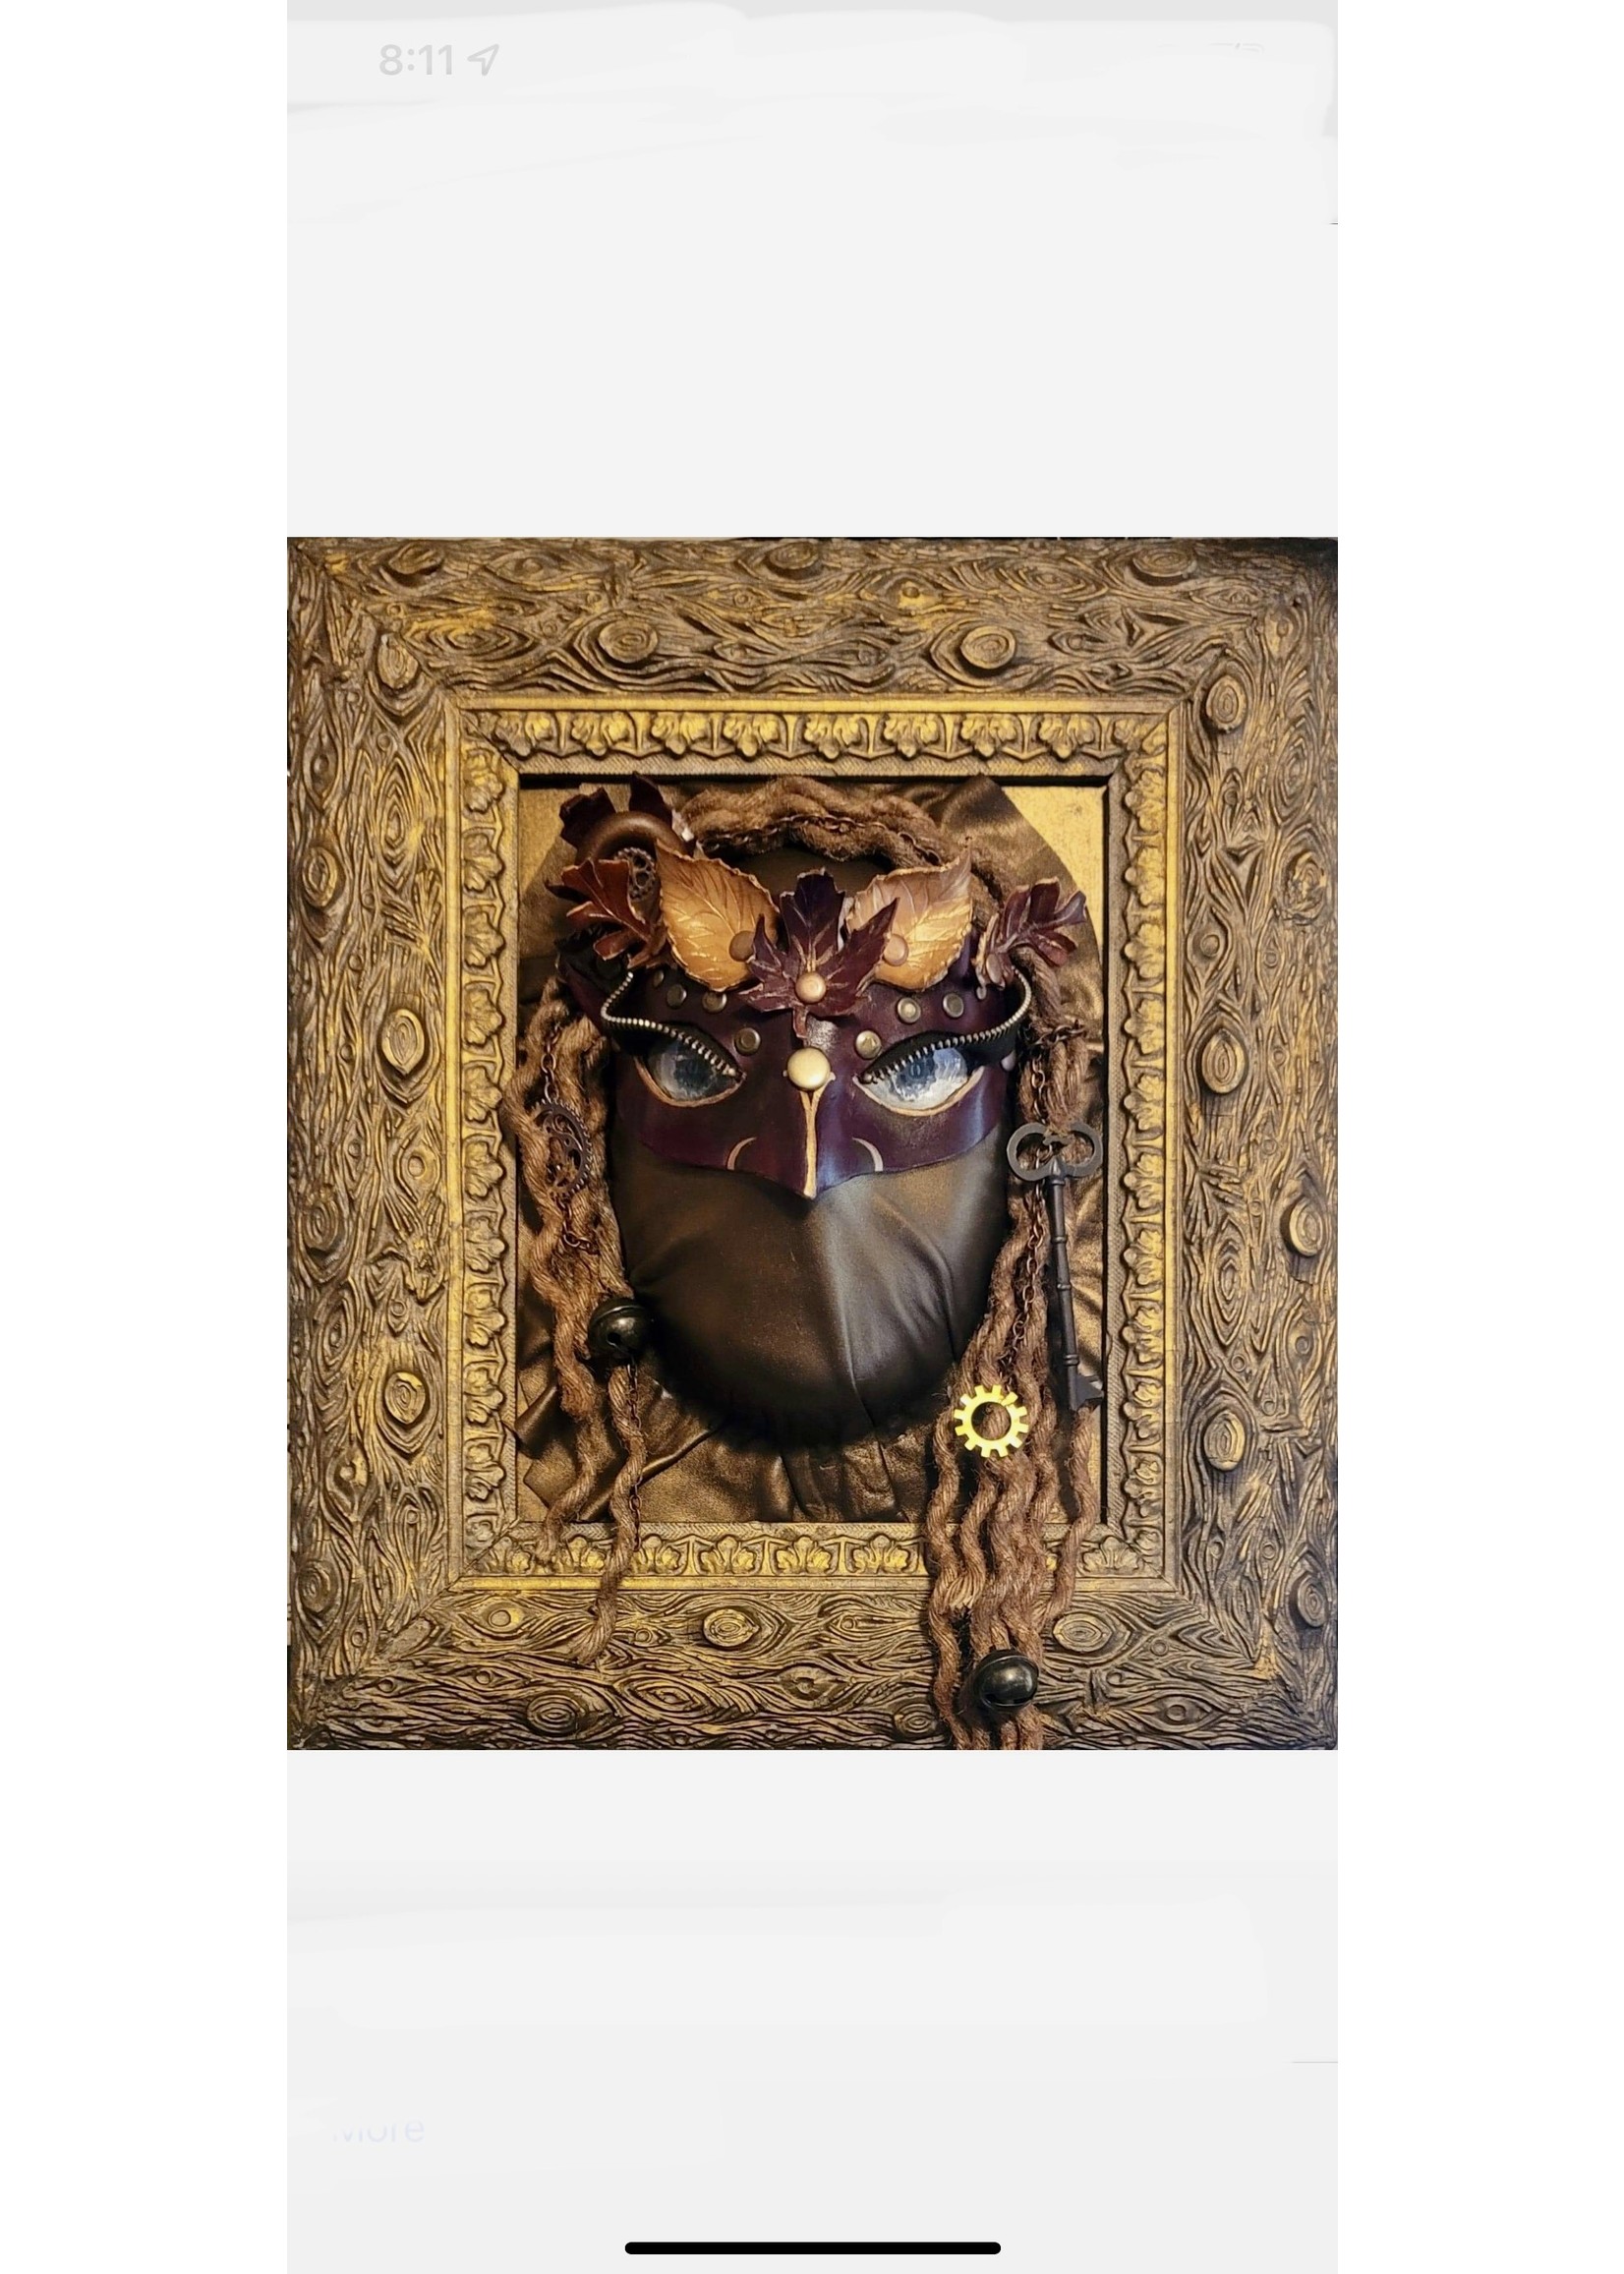 Lisa Boozer Boozer, L - Woodland Imp -gallery mask